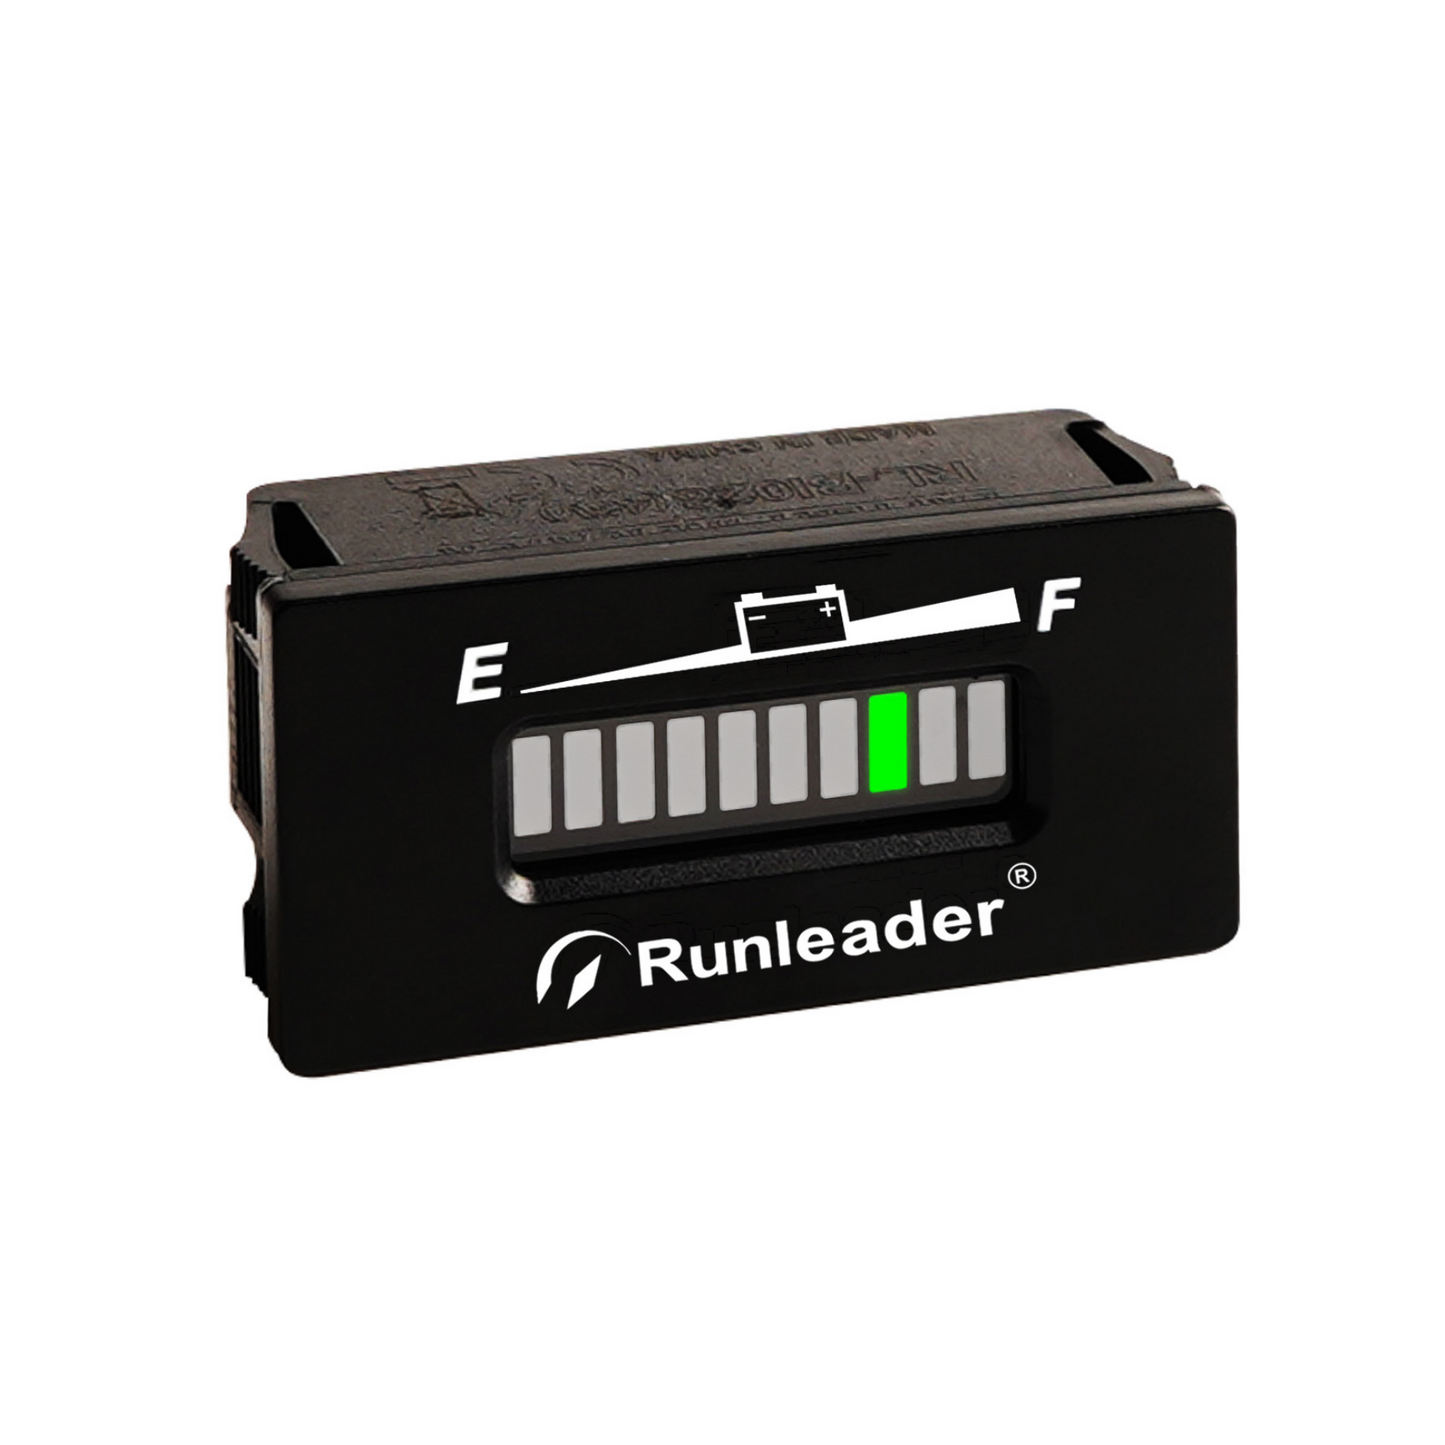 Runleader 12V/ 24V, 36V, 48V LED Battery Level Indicator, Battery Charge & Discharge Display, Waterproof Design, Applicable to Lead Acid Battery